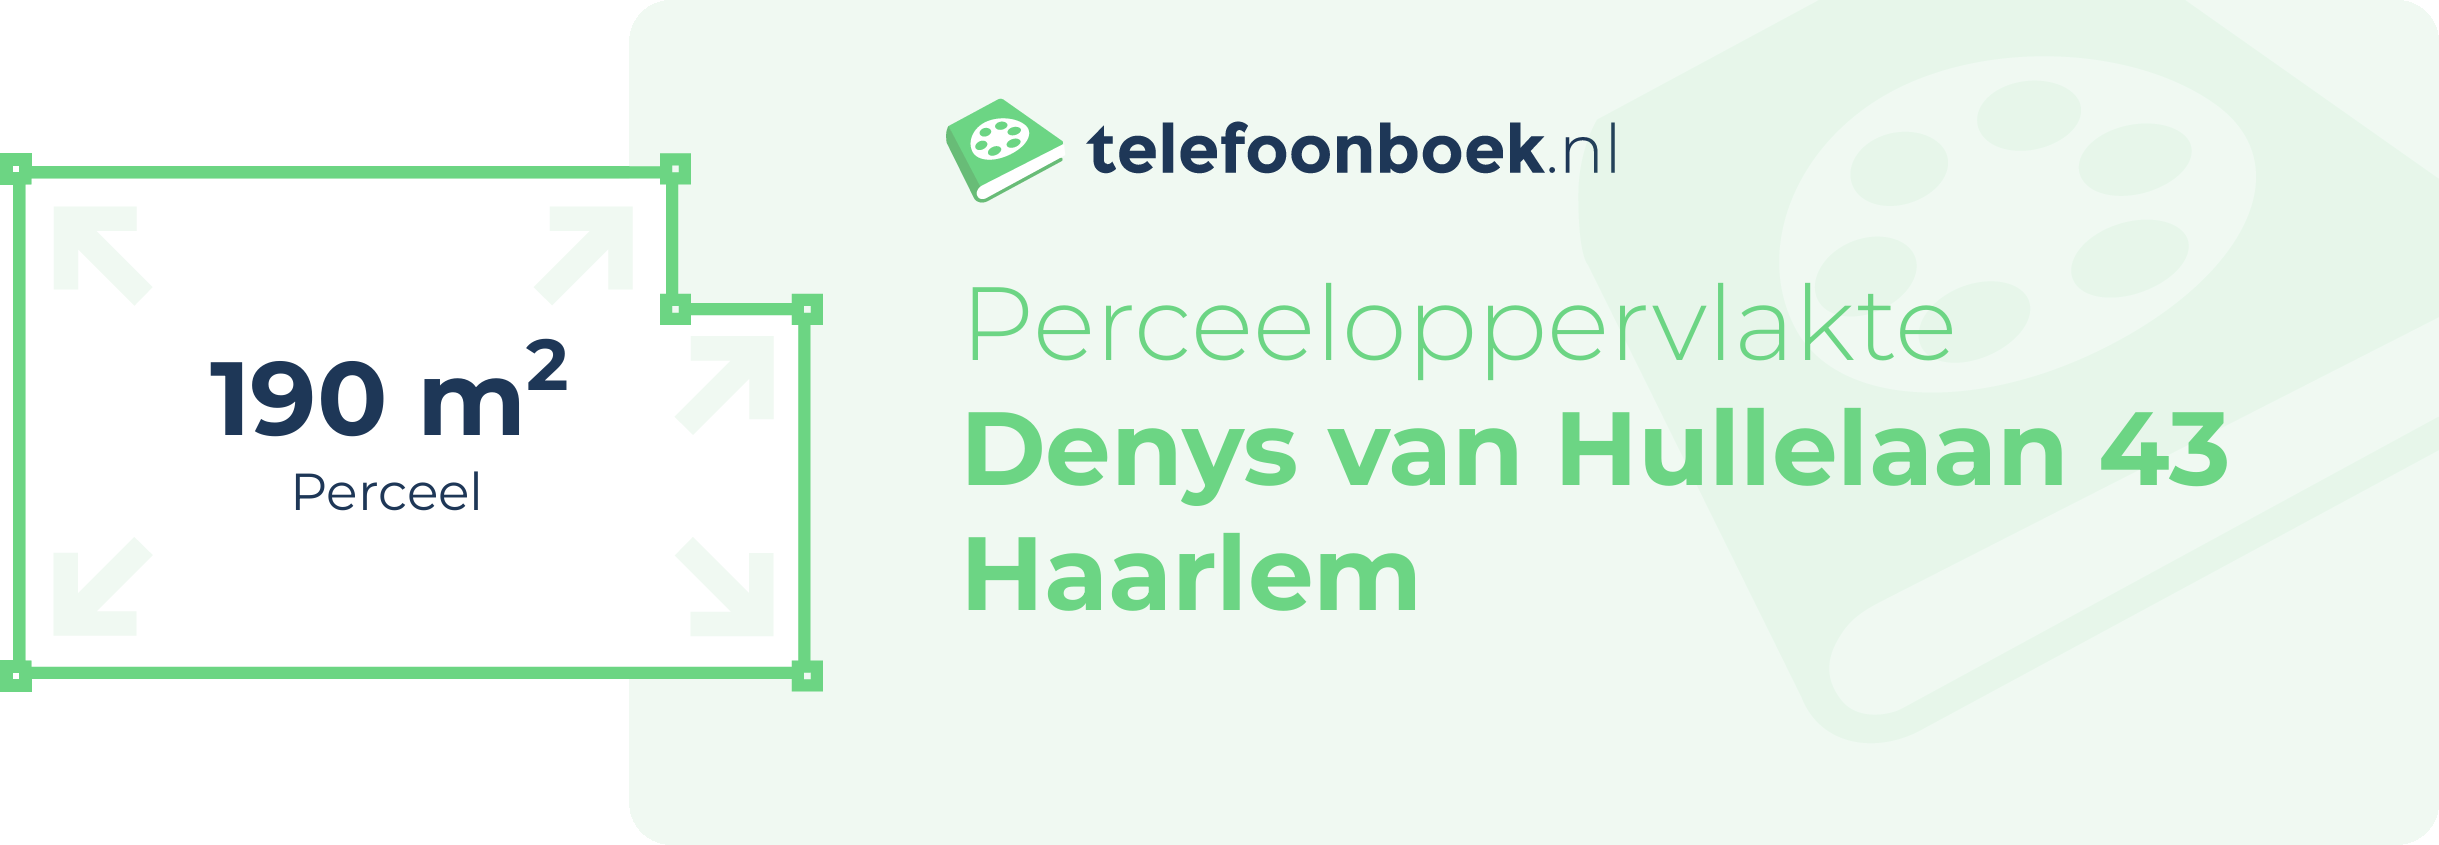 Perceeloppervlakte Denys Van Hullelaan 43 Haarlem